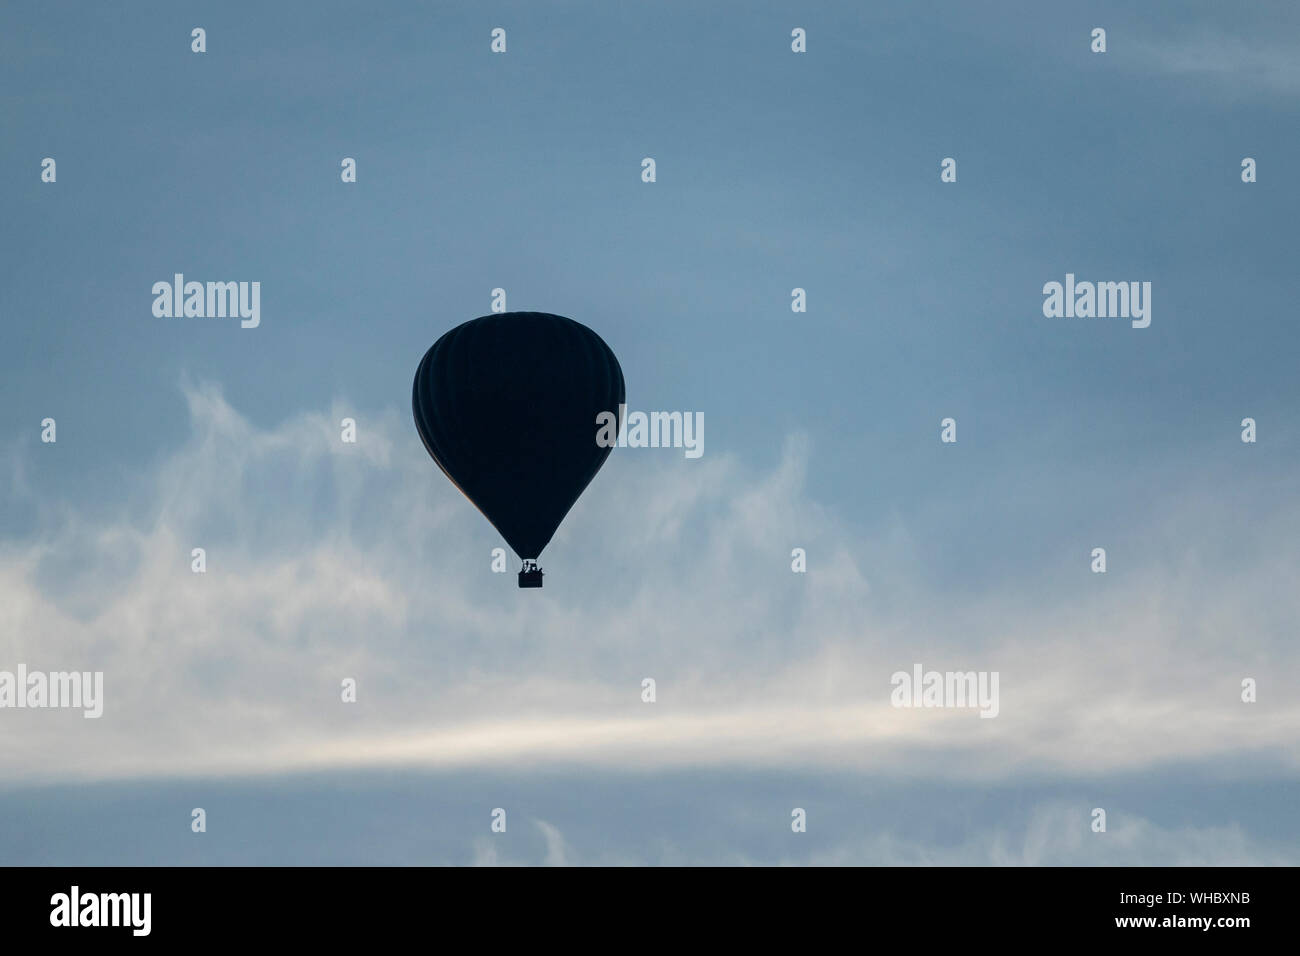 Un portrait d'un ballon à air chaud au loin, flottant dans un ciel bleu avec quelques nuages voile. Banque D'Images